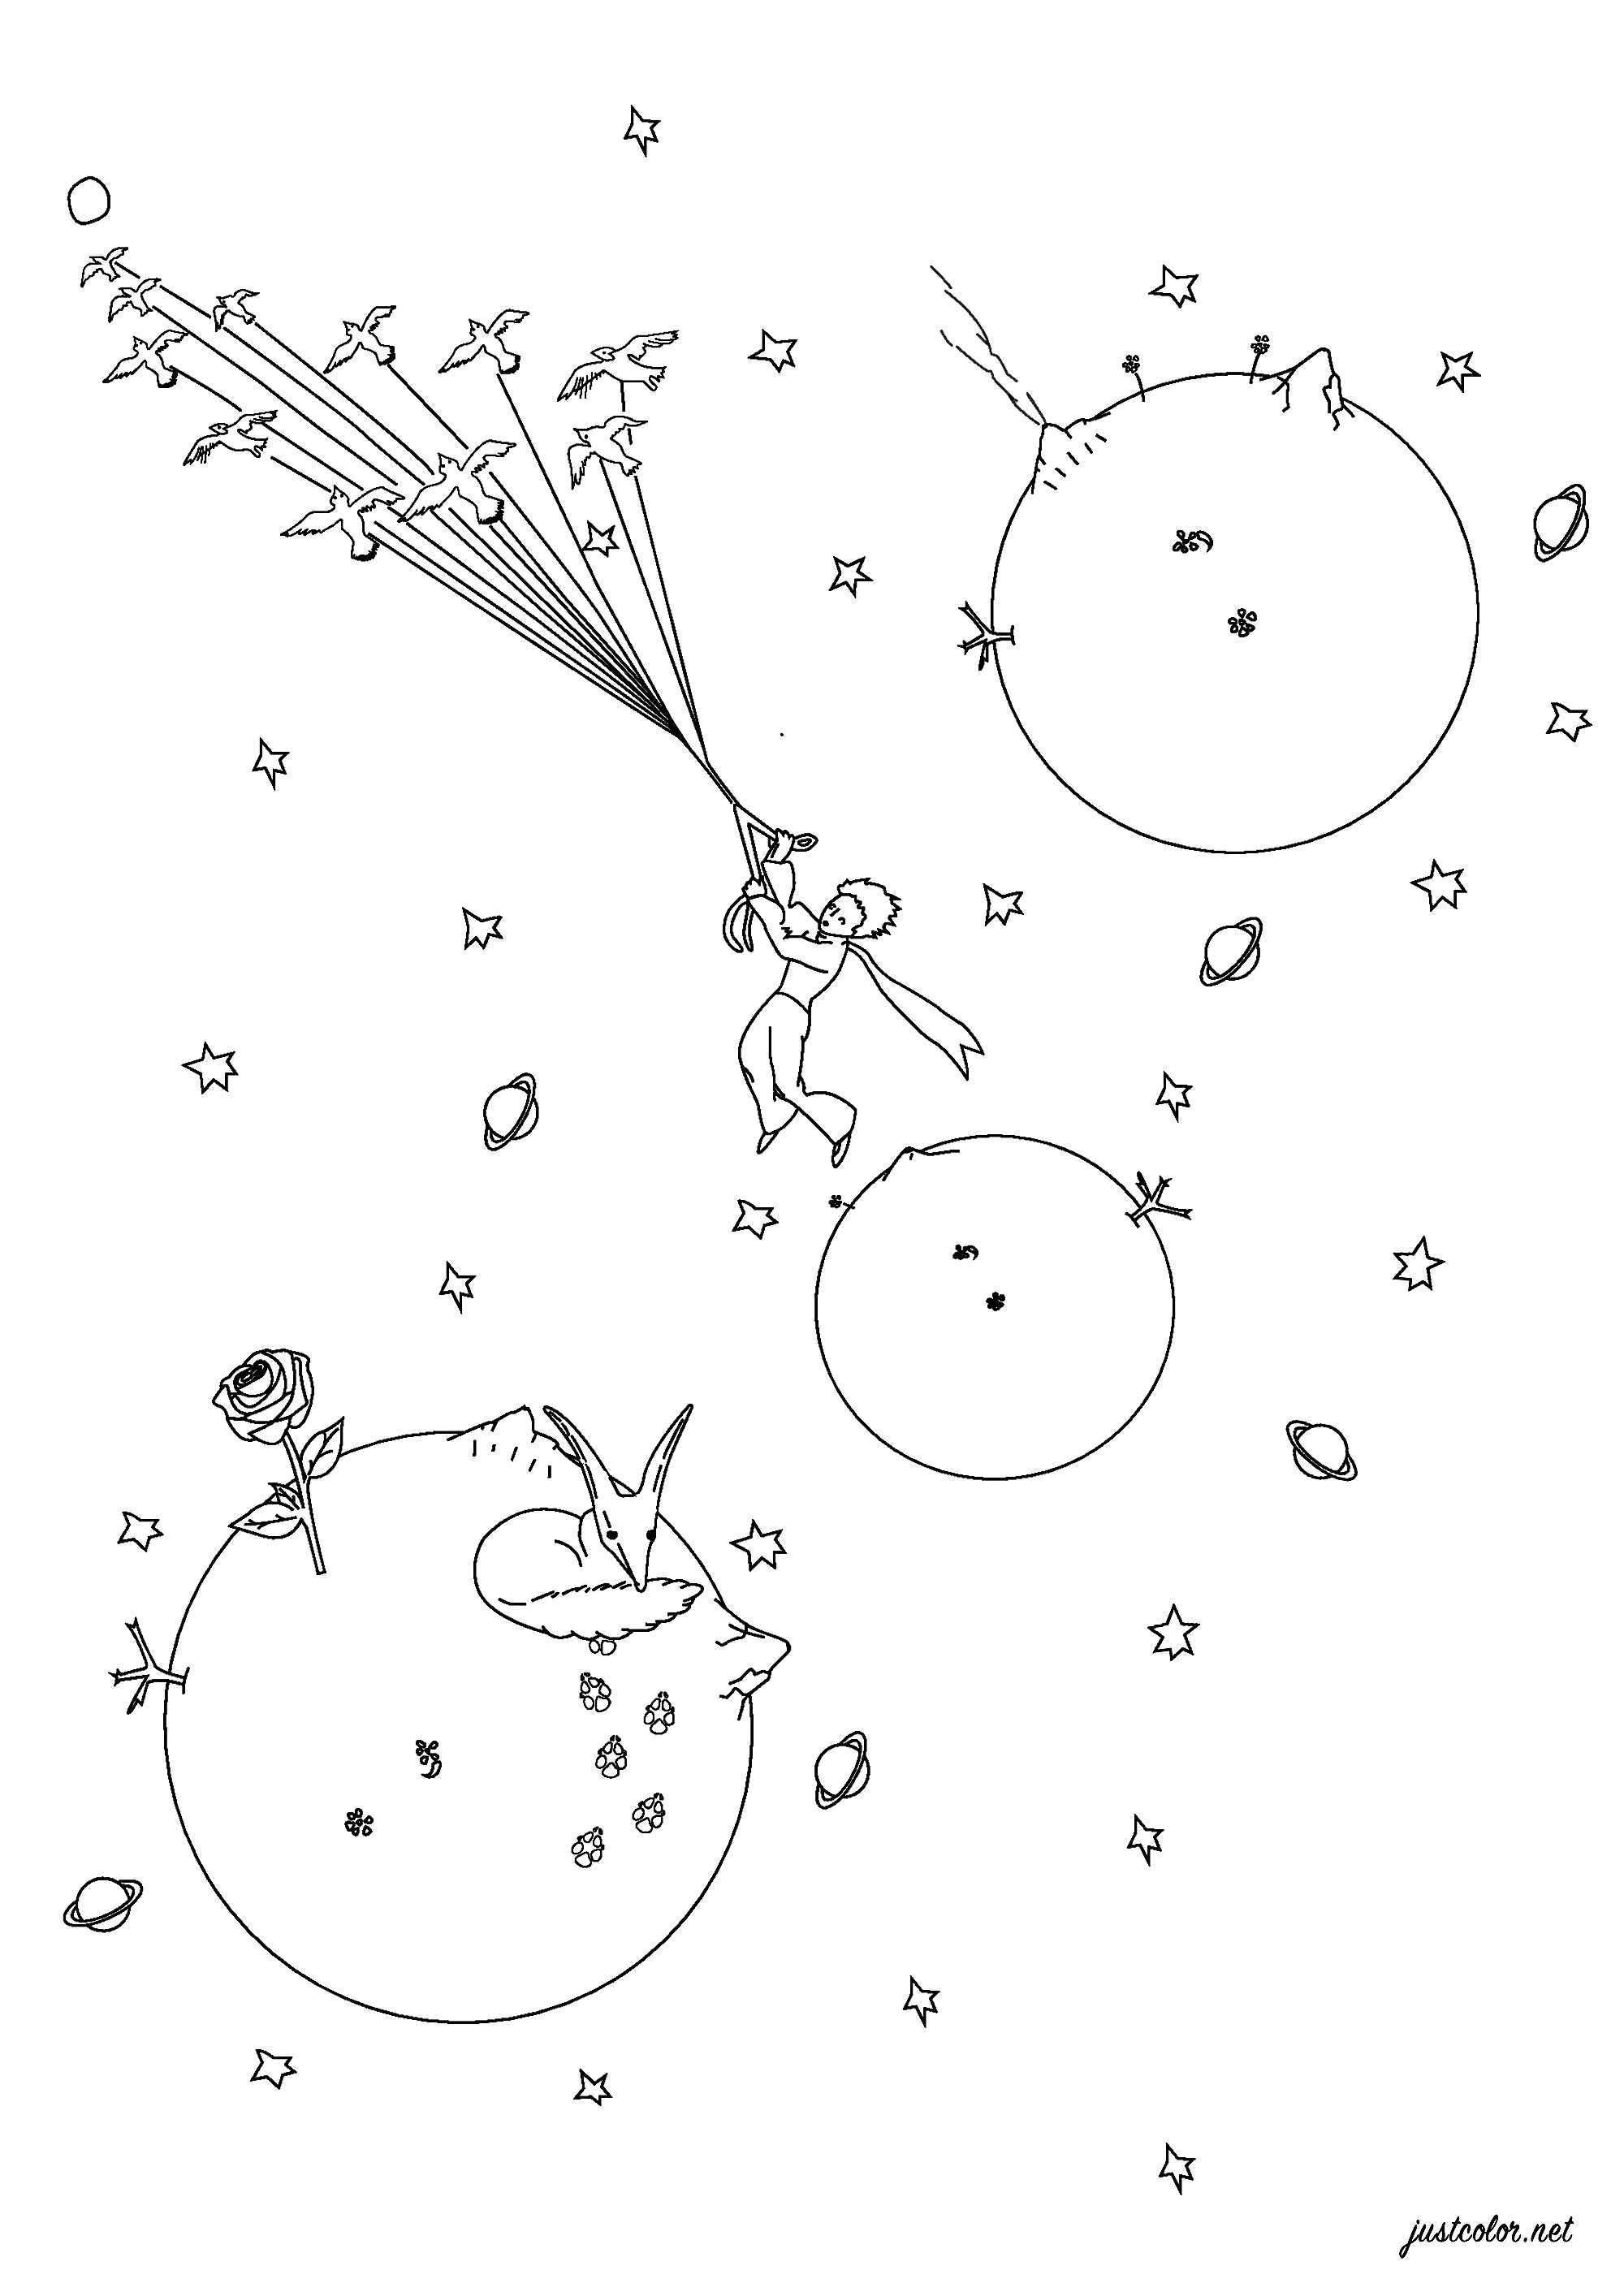 Página para colorear inspirada en El Principito de Antoine de Saint-Exupéry. Publicado por primera vez en 1943, El Principito es un cuento poético, con ilustraciones en acuarela del autor, en el que un piloto varado en el desierto conoce a un joven príncipe que visita la Tierra desde un diminuto asteroide, Artista : Pierre C